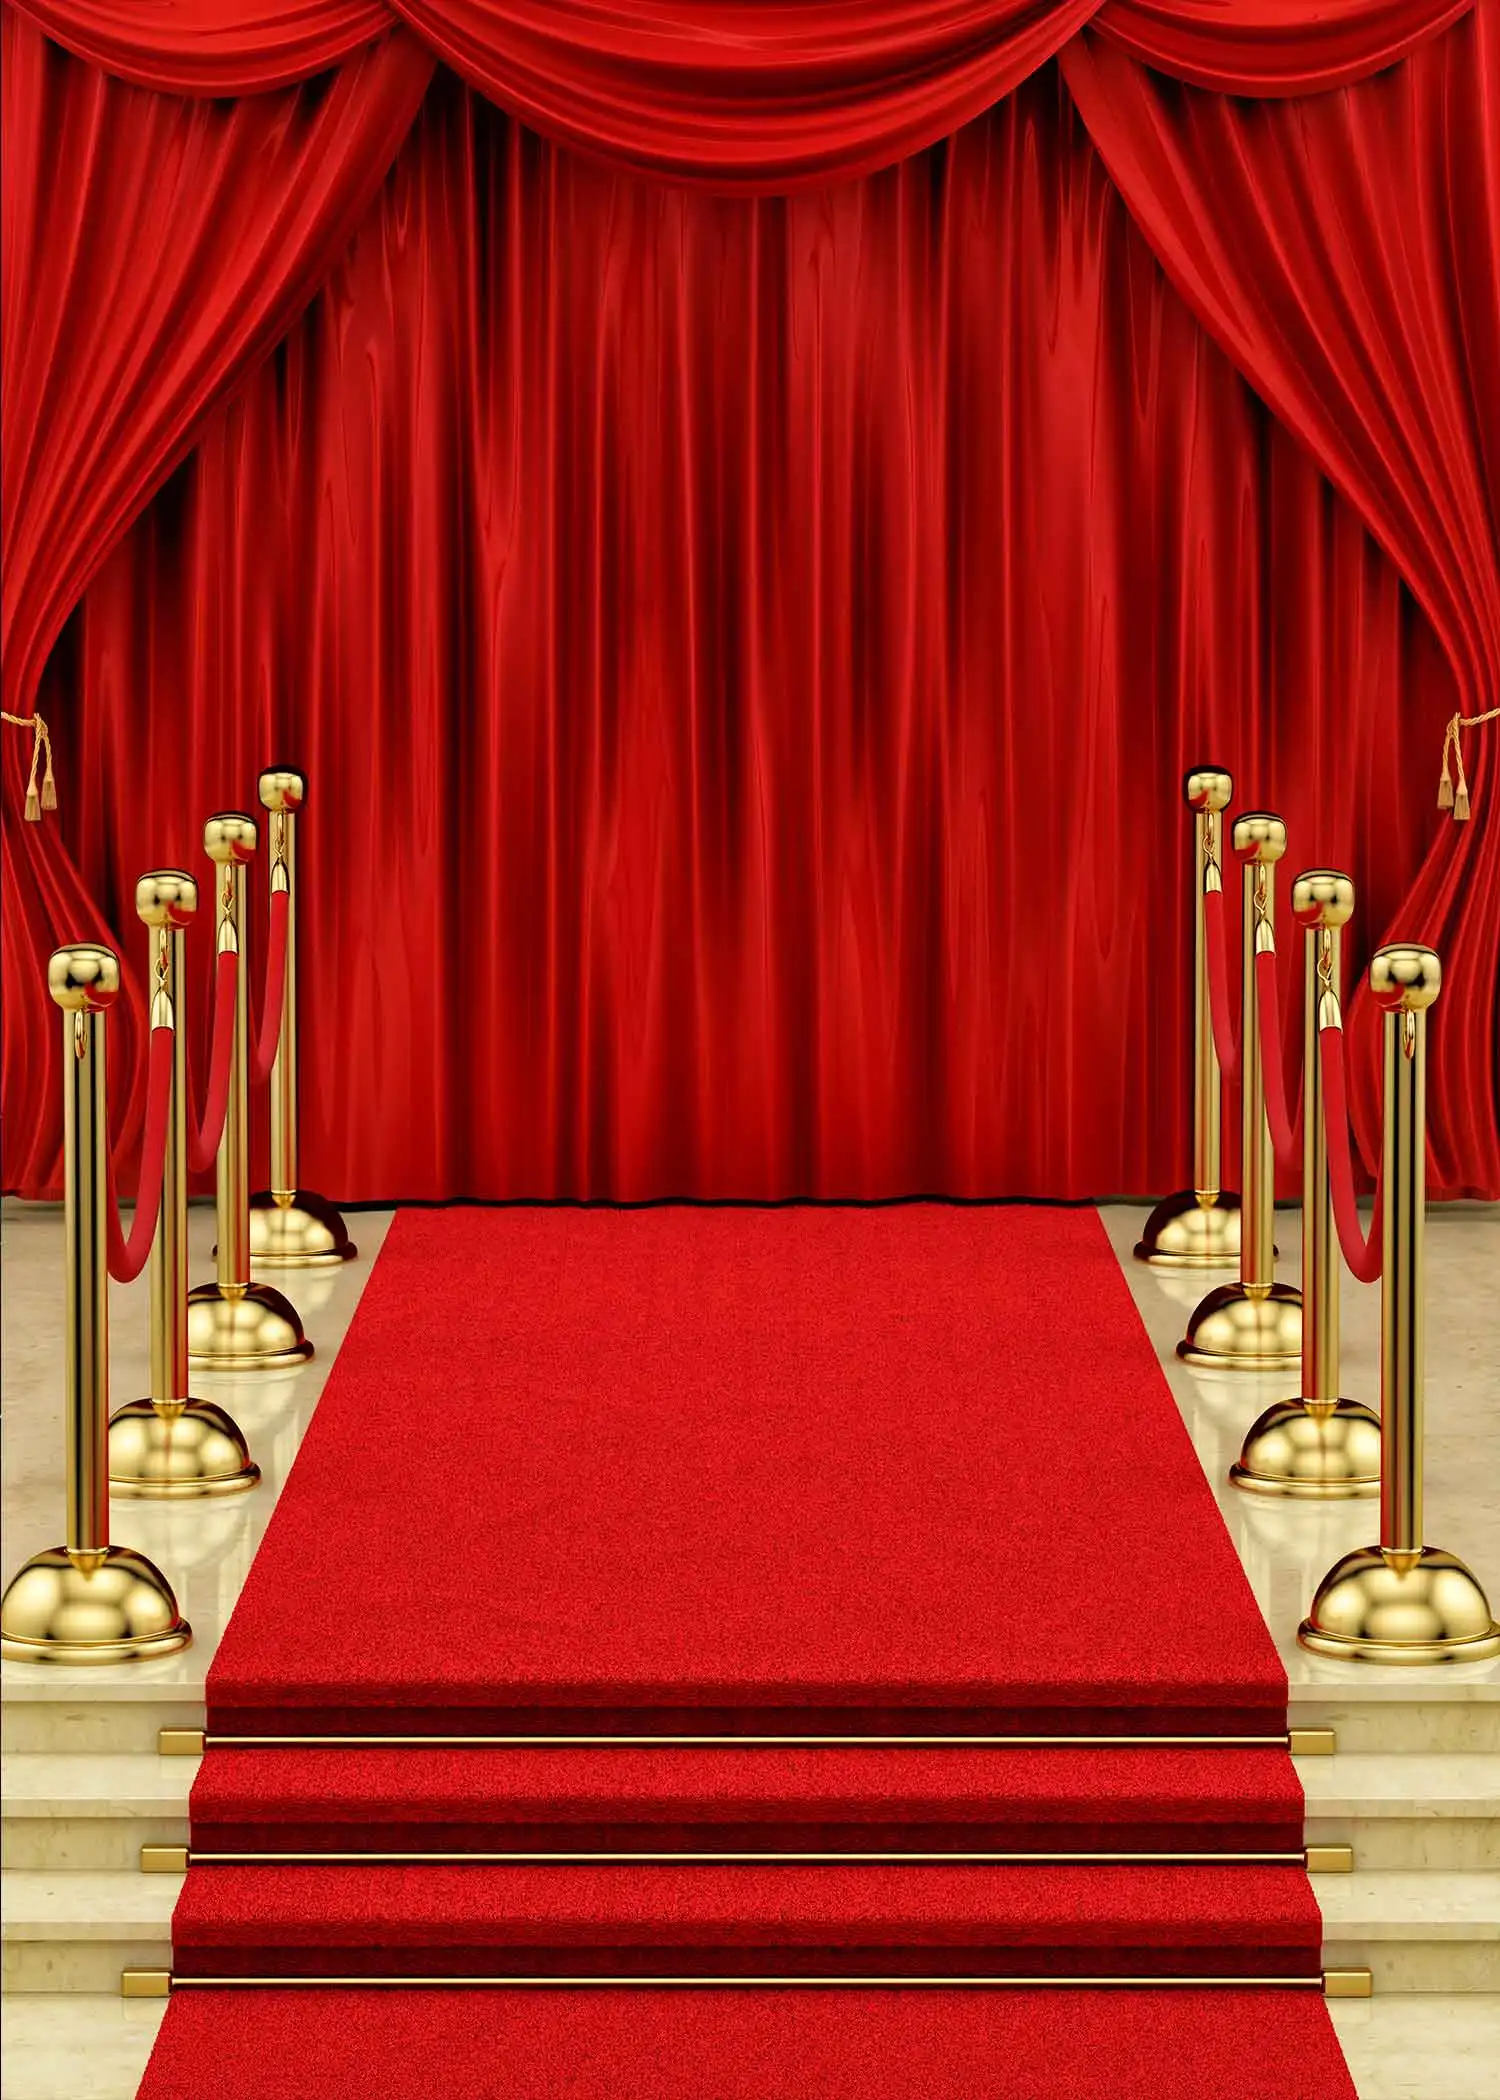 MTMETY голливудский красный ковер фоны для дня рождения кино награда Ночная церемония фоны фото стенд фотосессии реквизит